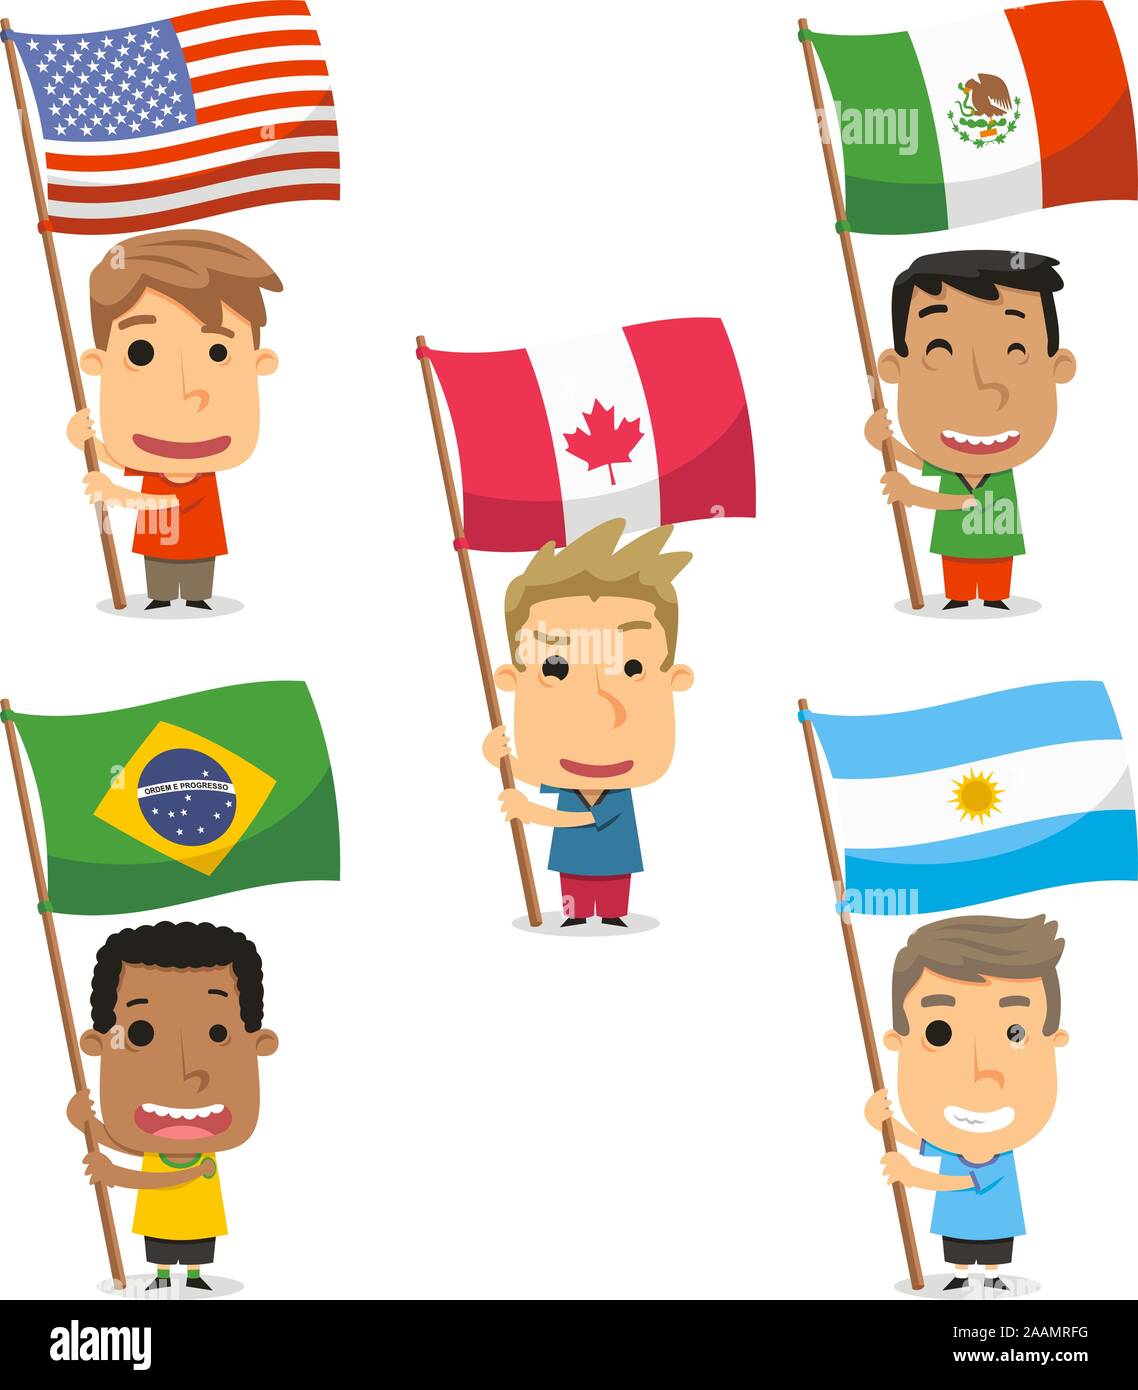 Les enfants porte-drapeau de l'Amérique, USA, Etats-Unis, Mexique, Canada, Brésil, Argentine. Vector illustration cartoon. Illustration de Vecteur